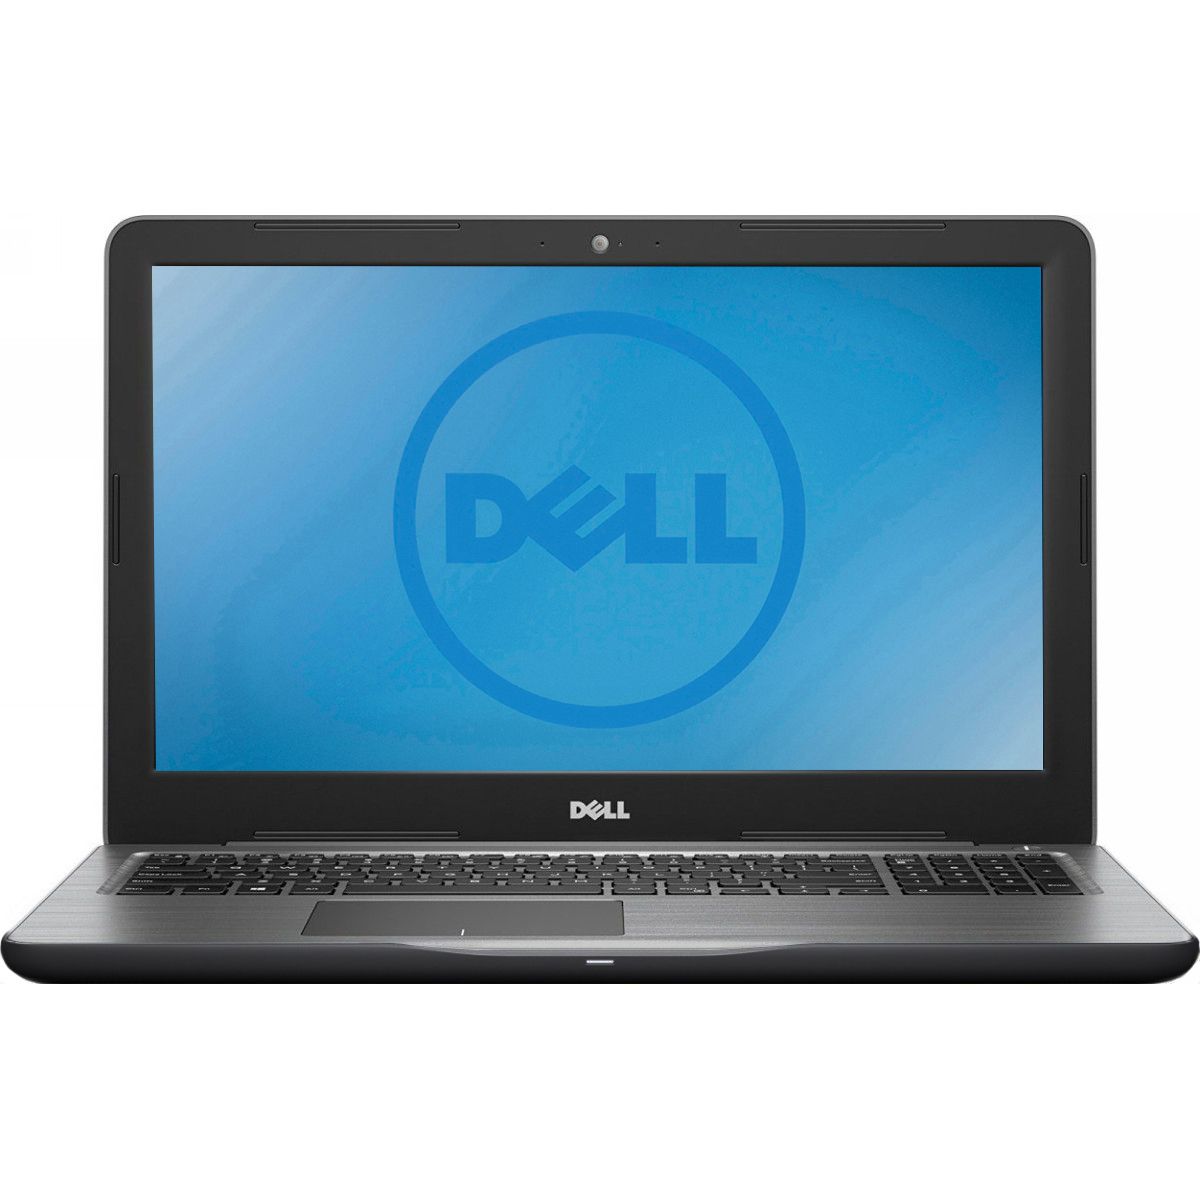 Laptop Dell Inspiron 5567, 15.6" FHD Anti-glare LED, Intel Core i5-7200U, AMD R7 M445 GDDR5, RAM 8GB DDR4, SSD 256GB, Ubuntu Linux 16.04